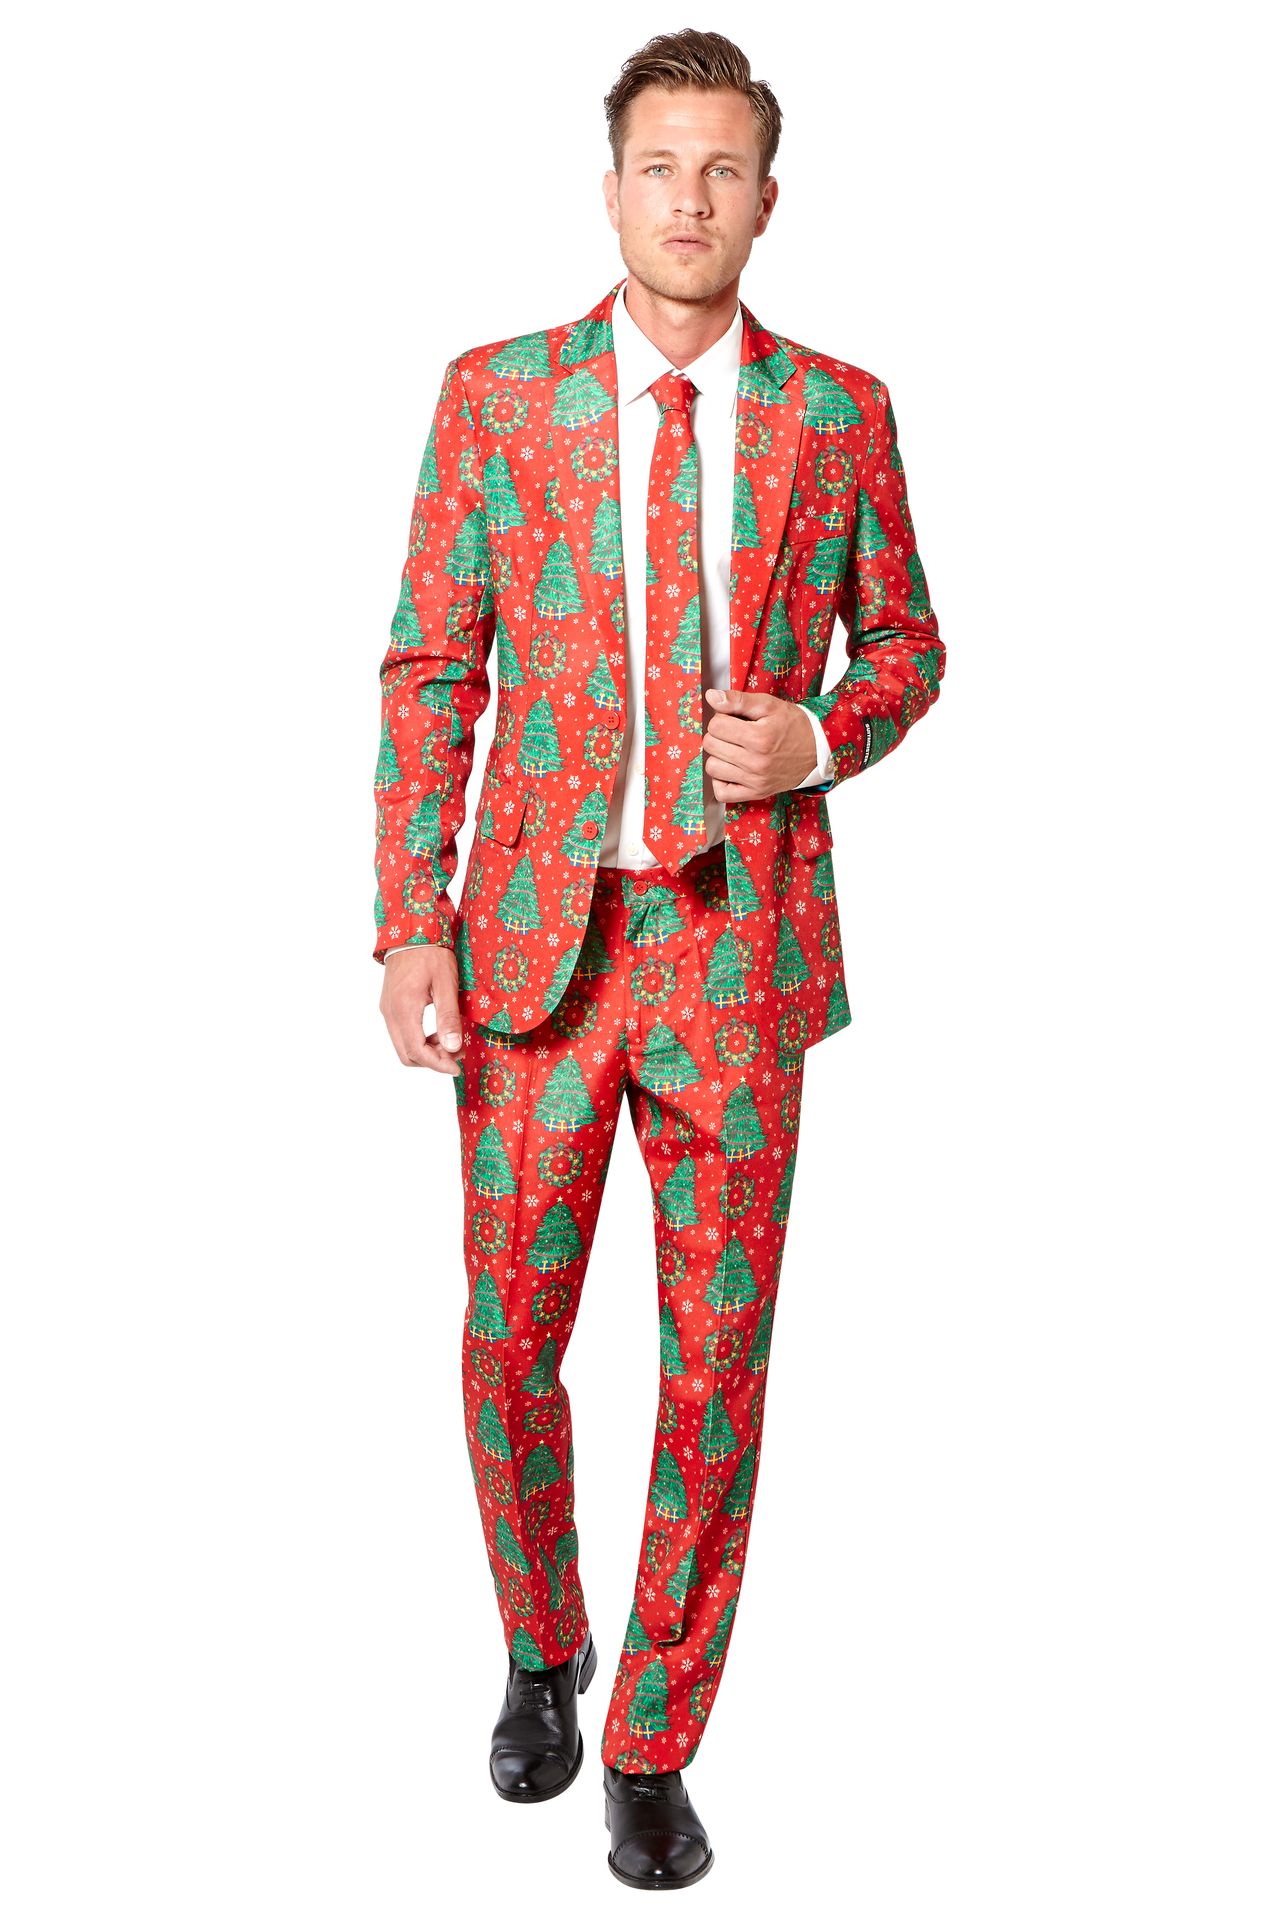 Suitmeister Kerstboom kostuum